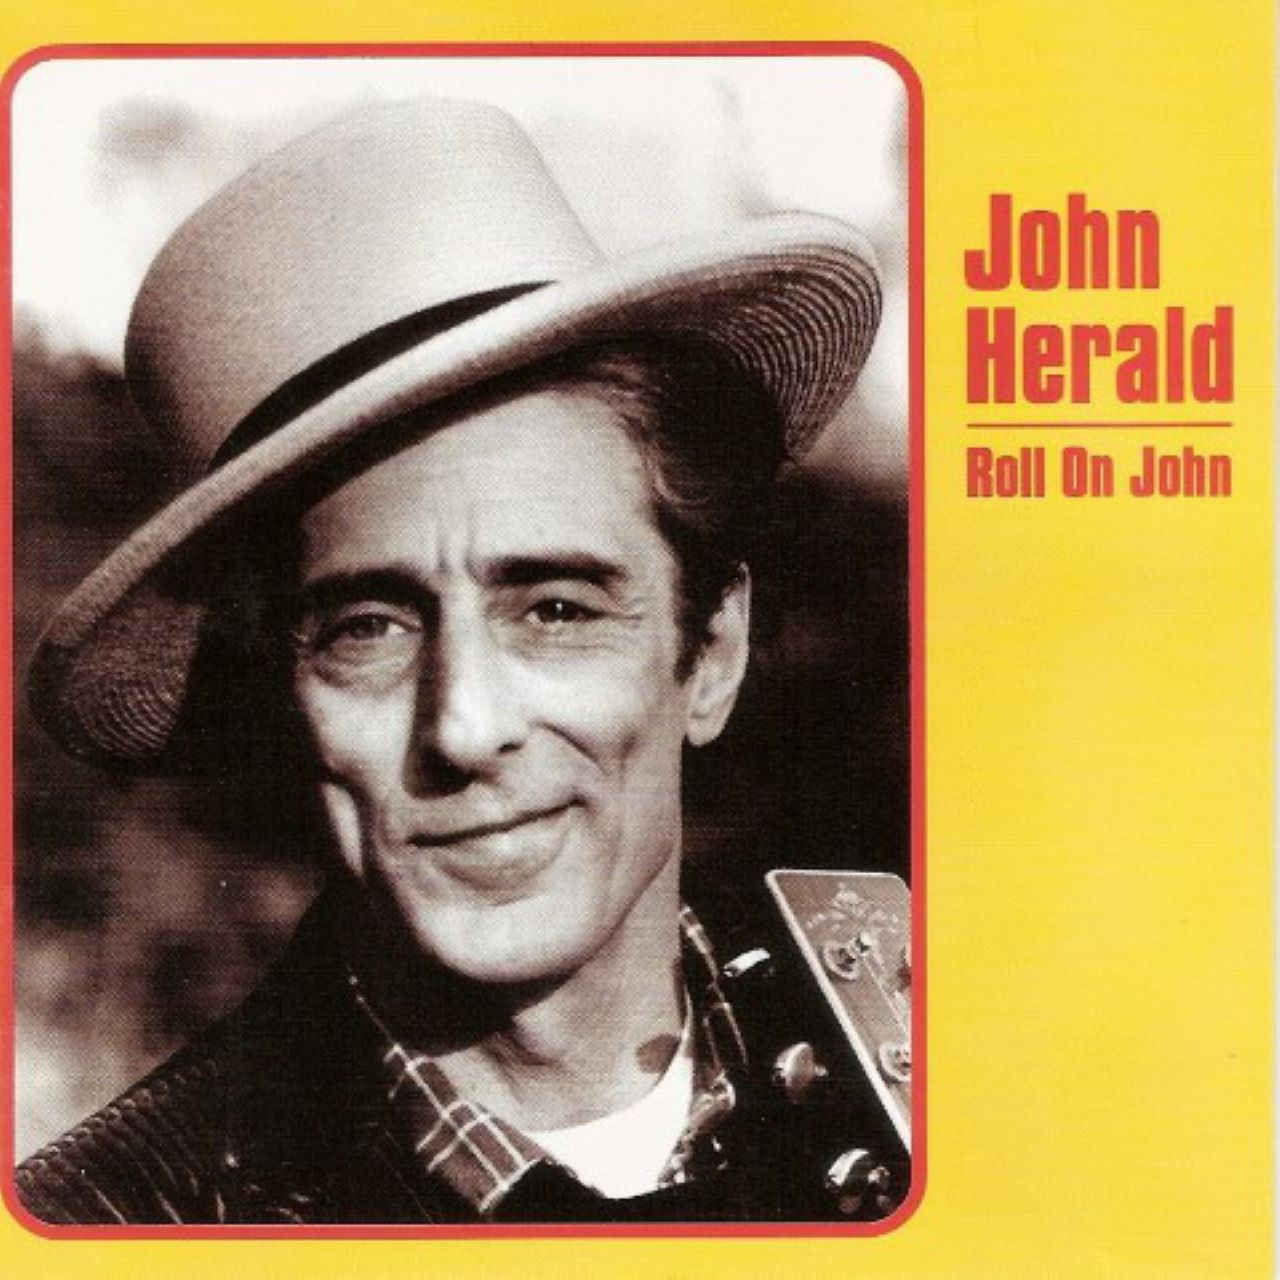 John Herald - Roll On John cover album